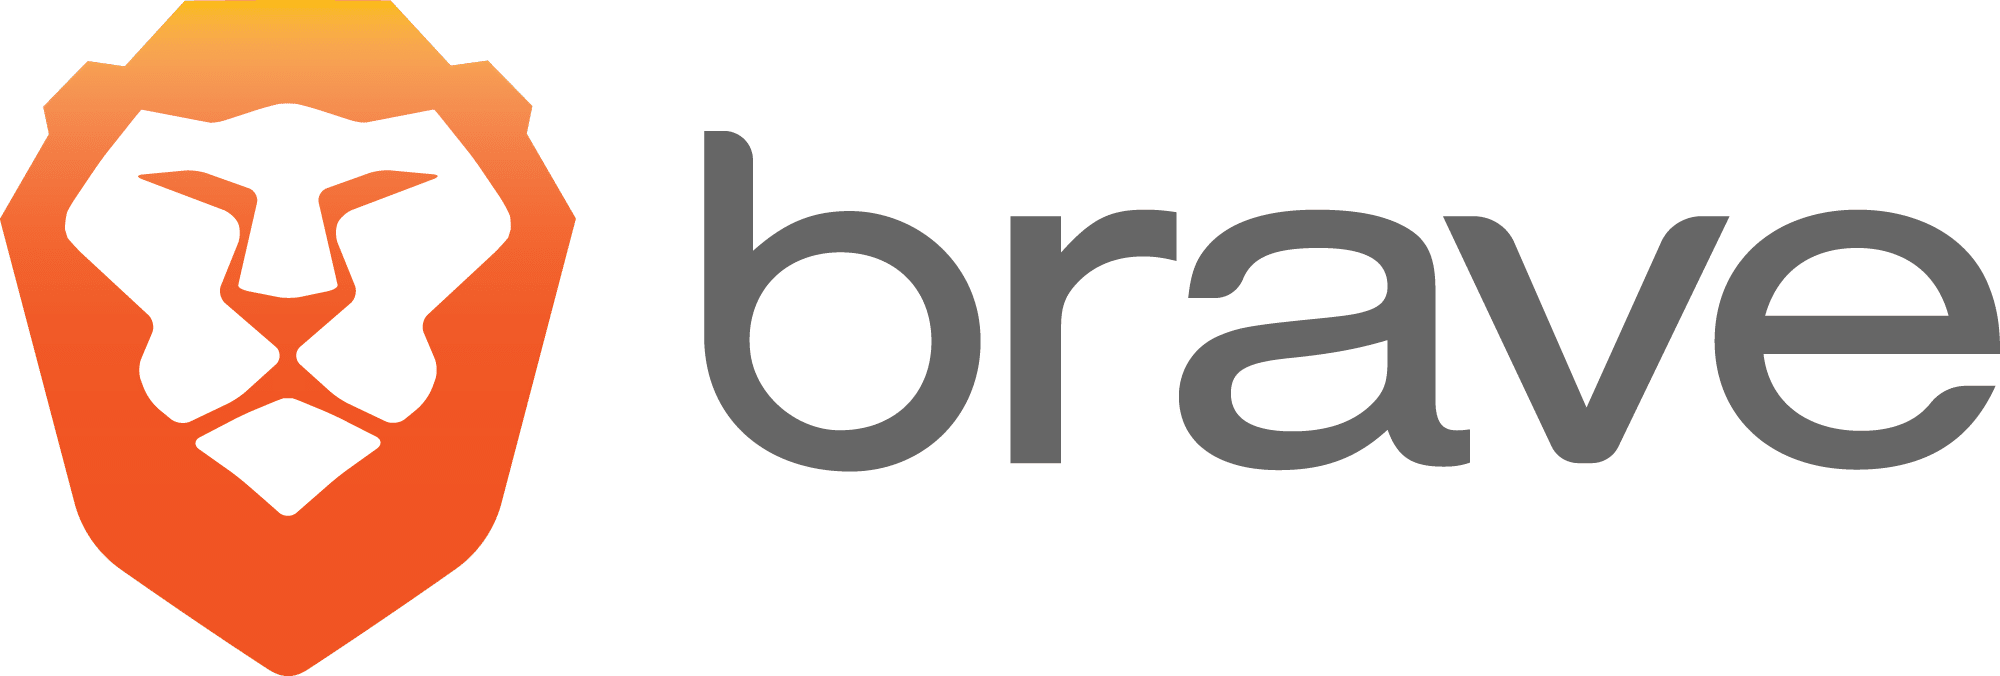 brave software logo